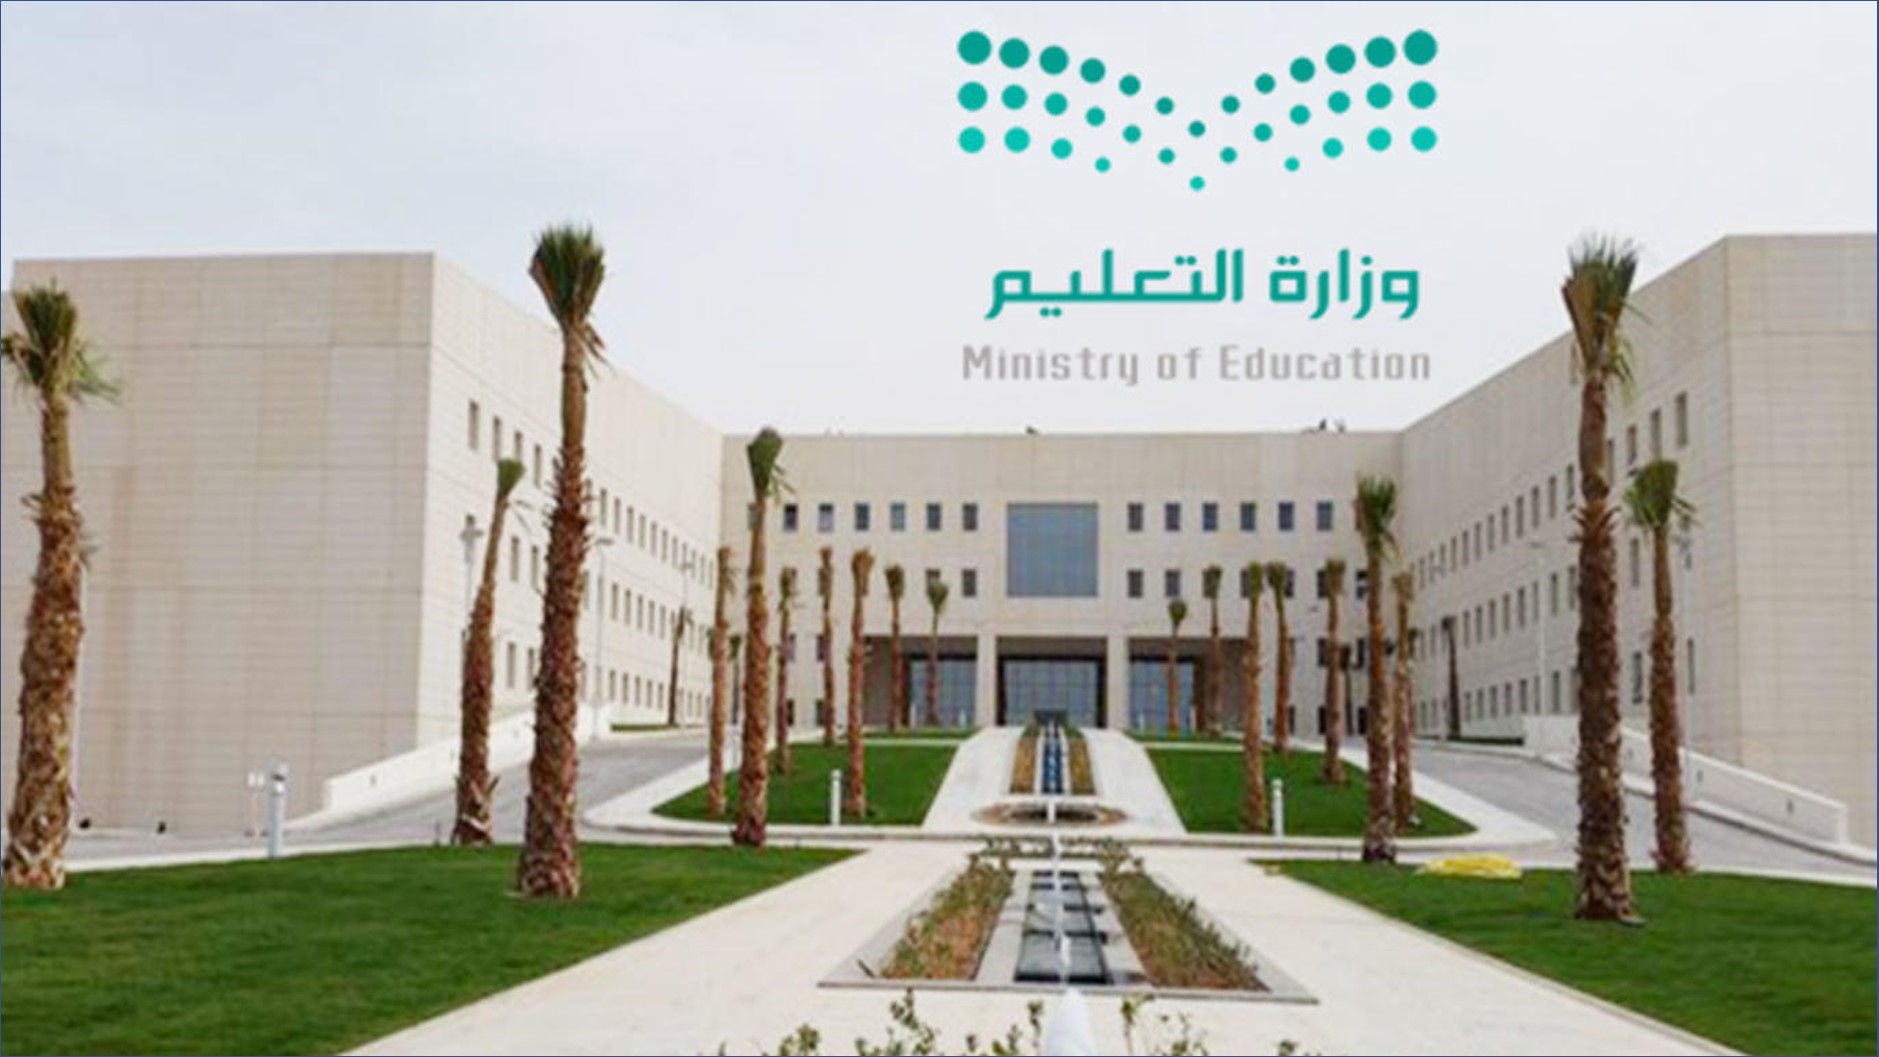 فتح التقديم في وزارة التعليم لبرنامج الابتعاث لحملة الثانوية من الجنسين